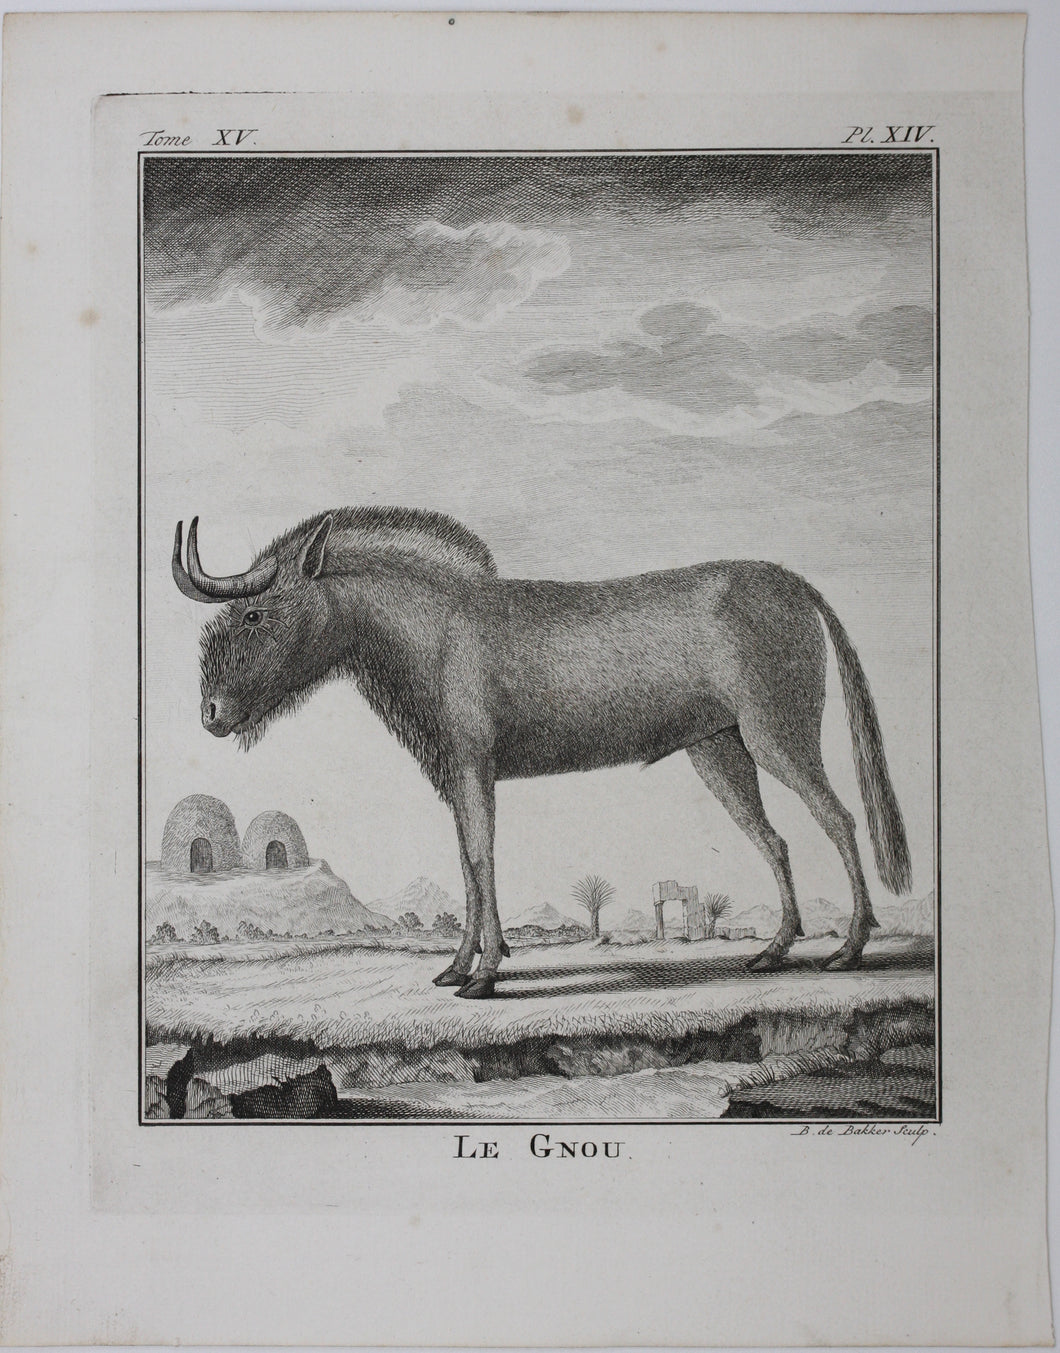 Le Gnou. Engraved by B. de Bakker. 1771.